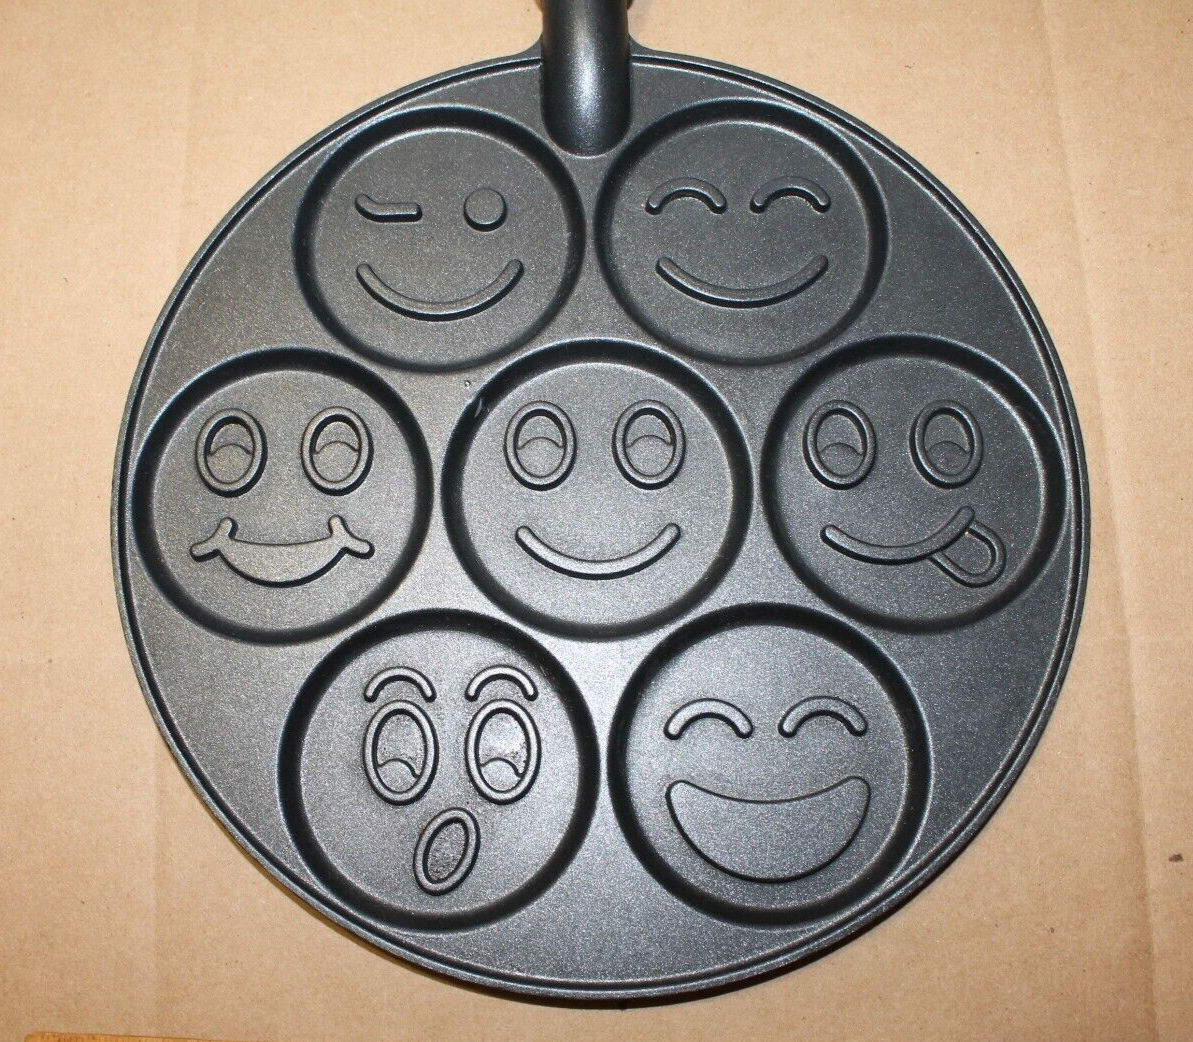 Emoji Smiley Face Pancake Pan Nordic Non-Stick Coating Breakfast Pan Cakes USA - $10.00